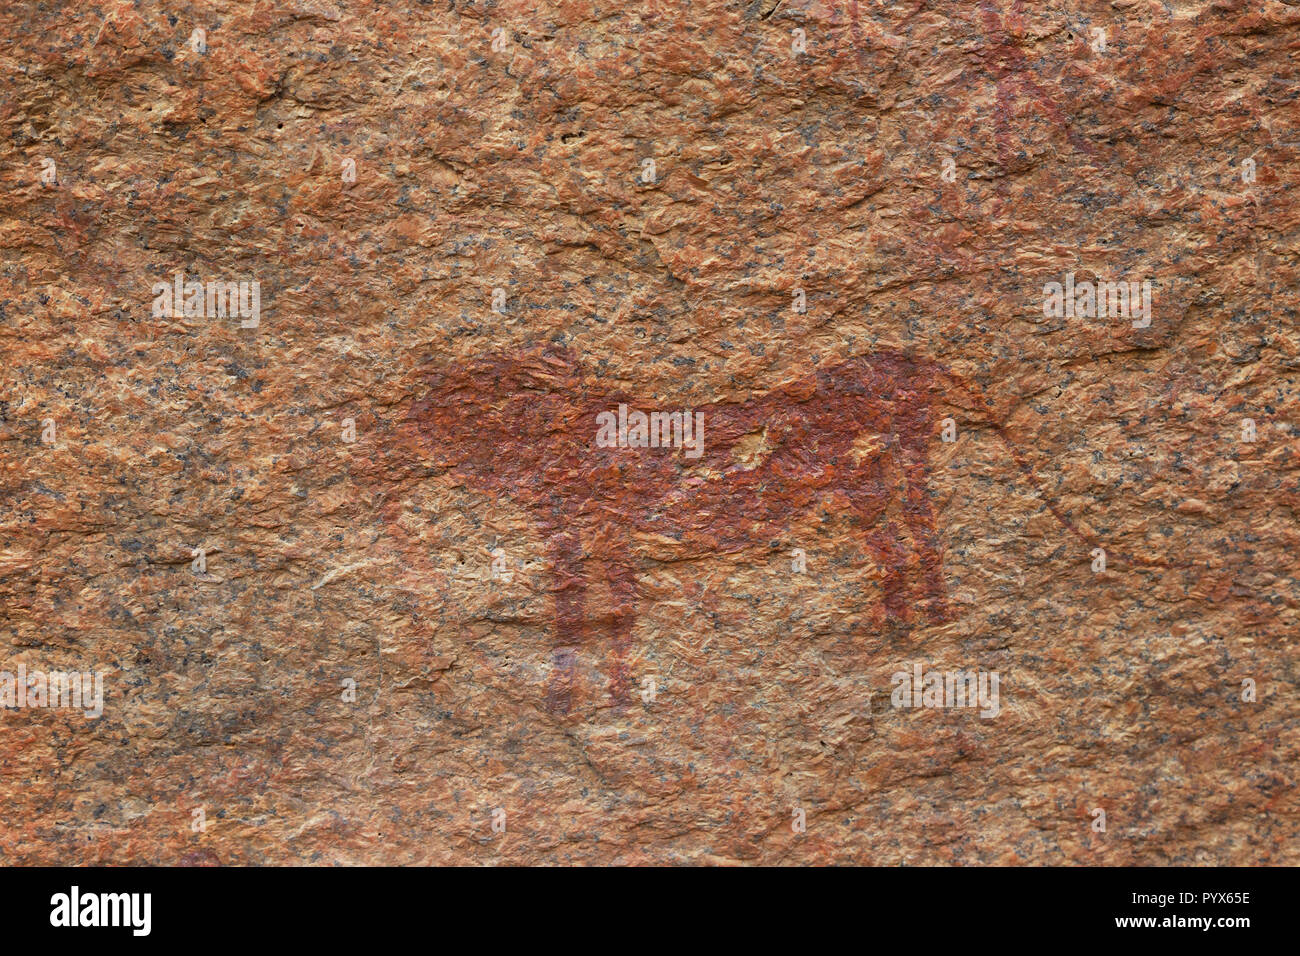 Namibie - peinture rock rock art antique par Les bushmen montrant un lion, environ 2000 ans ; les petits paradis Bushman, Spitzkoppe, Afrique Namibie Banque D'Images